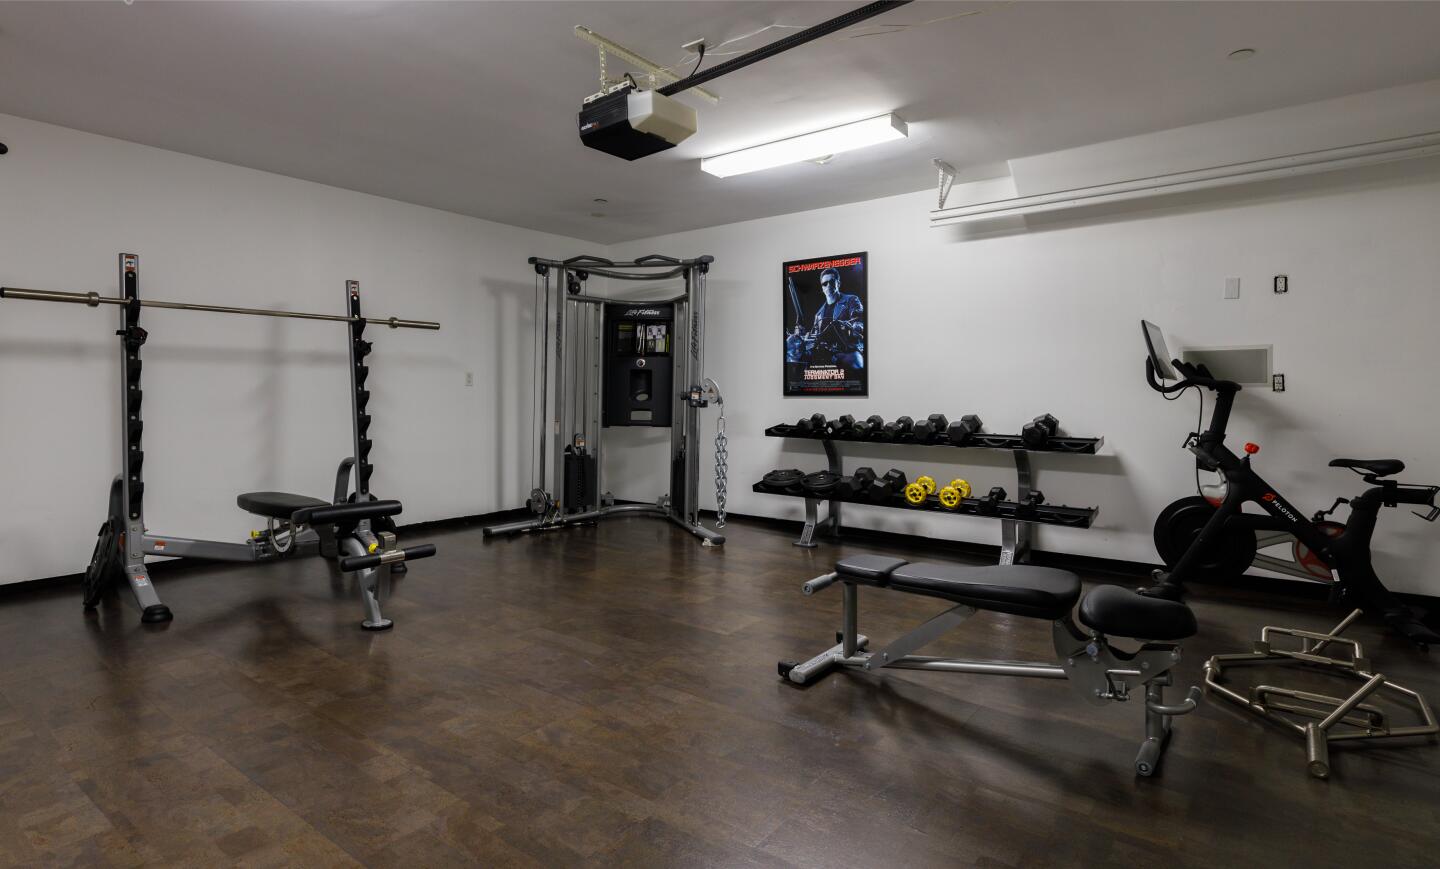 Workout equipment fills a room.